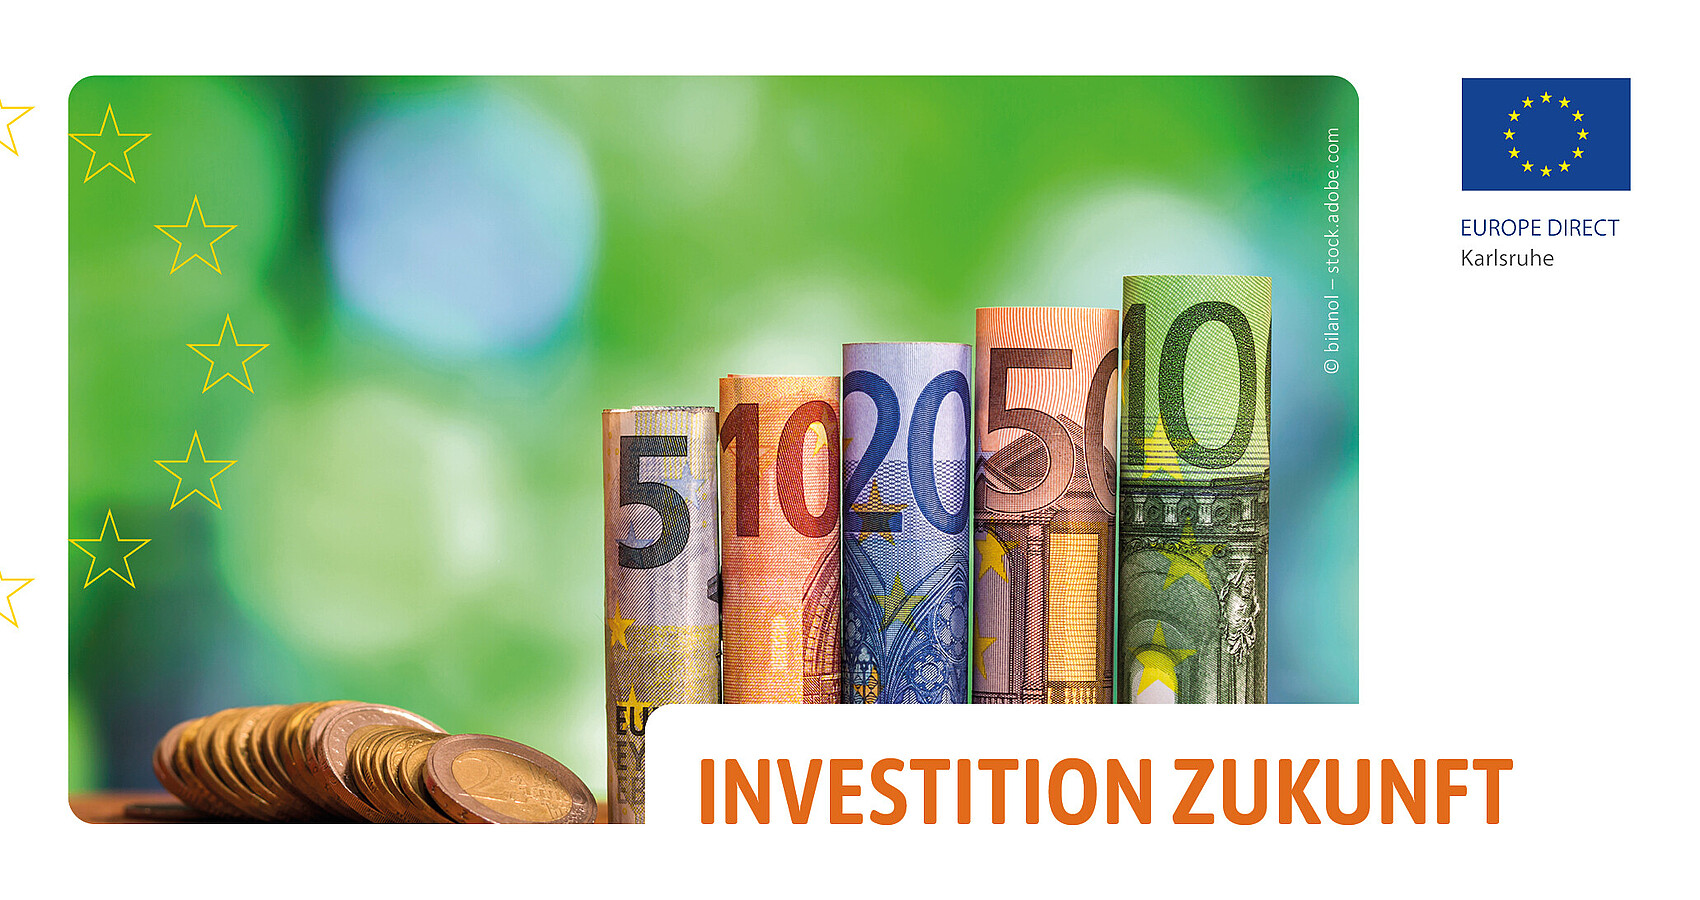 Das Bild zeigt mehrere Euromünzen sowie je einen 5 bis 100 Euroscheine vor einem grünen Hintergrund. Auf der linken Seite ist ein halber Sternenkreis und rechts das Logo des EUROPE DIRECT Karlsruhe abgebildet. Unten rechts steht in orangenen Großbuchstaben „Investition Zukunft“.